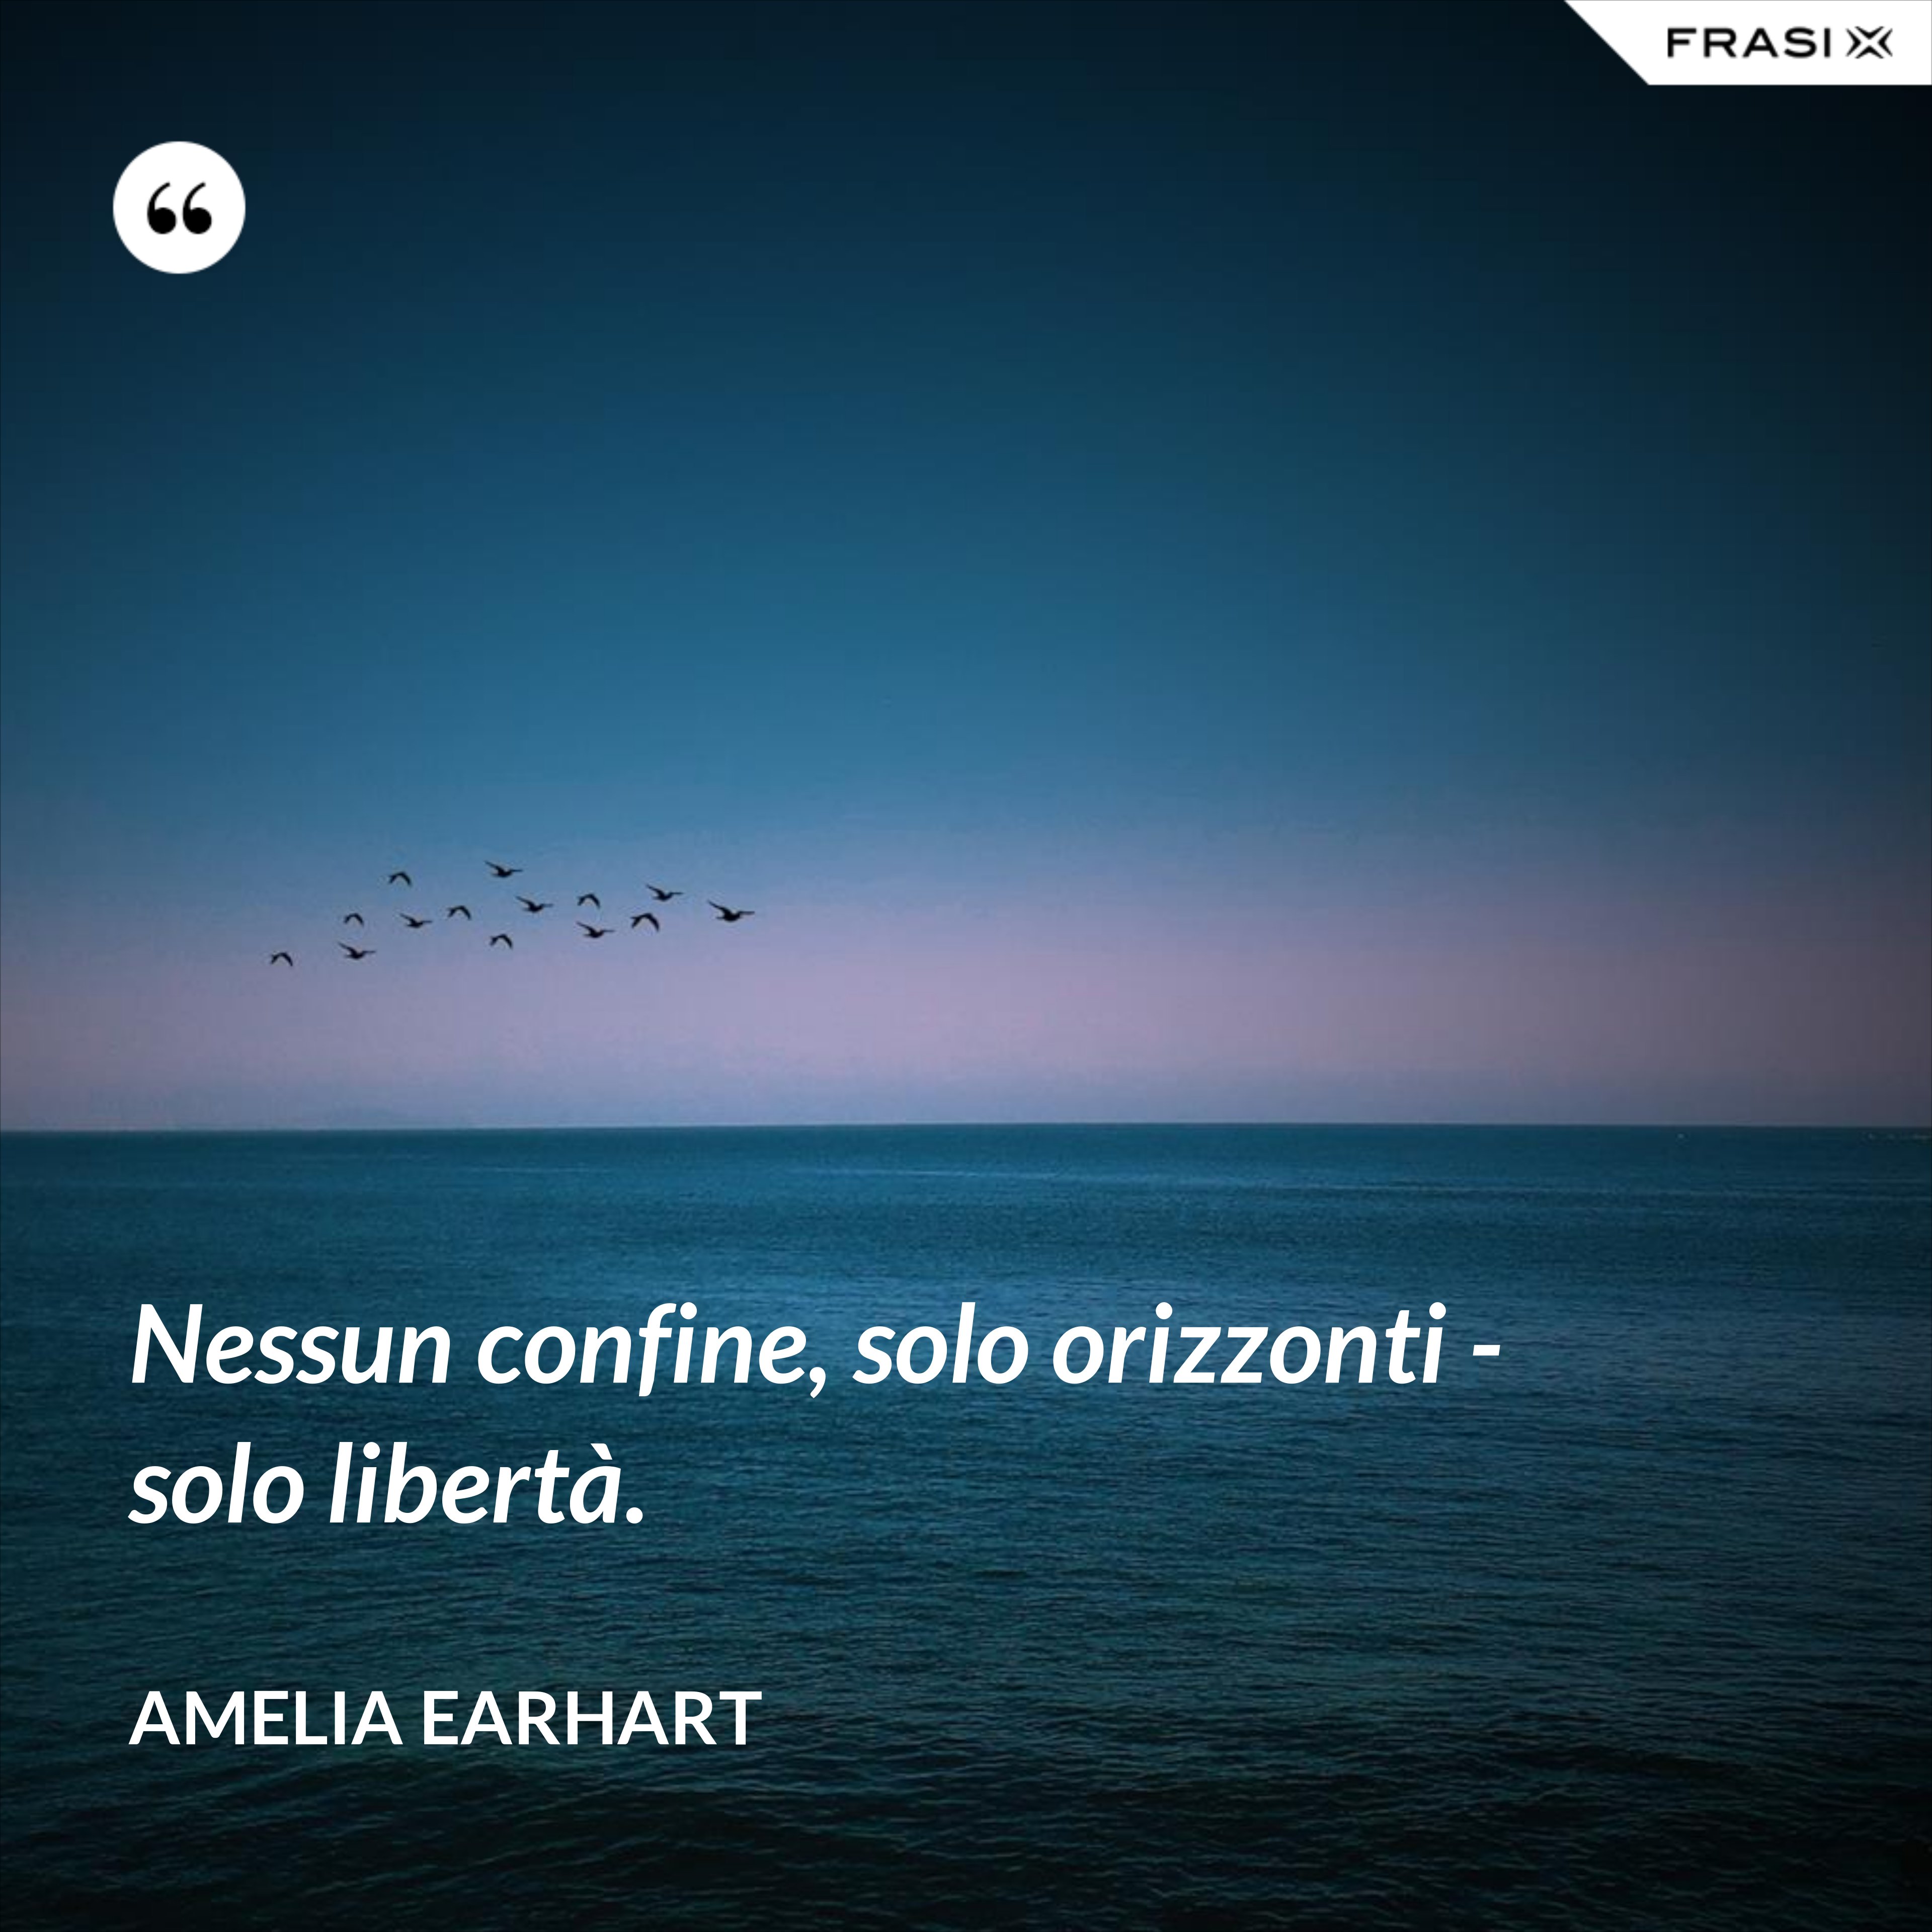 Nessun confine, solo orizzonti - solo libertà. - Amelia Earhart